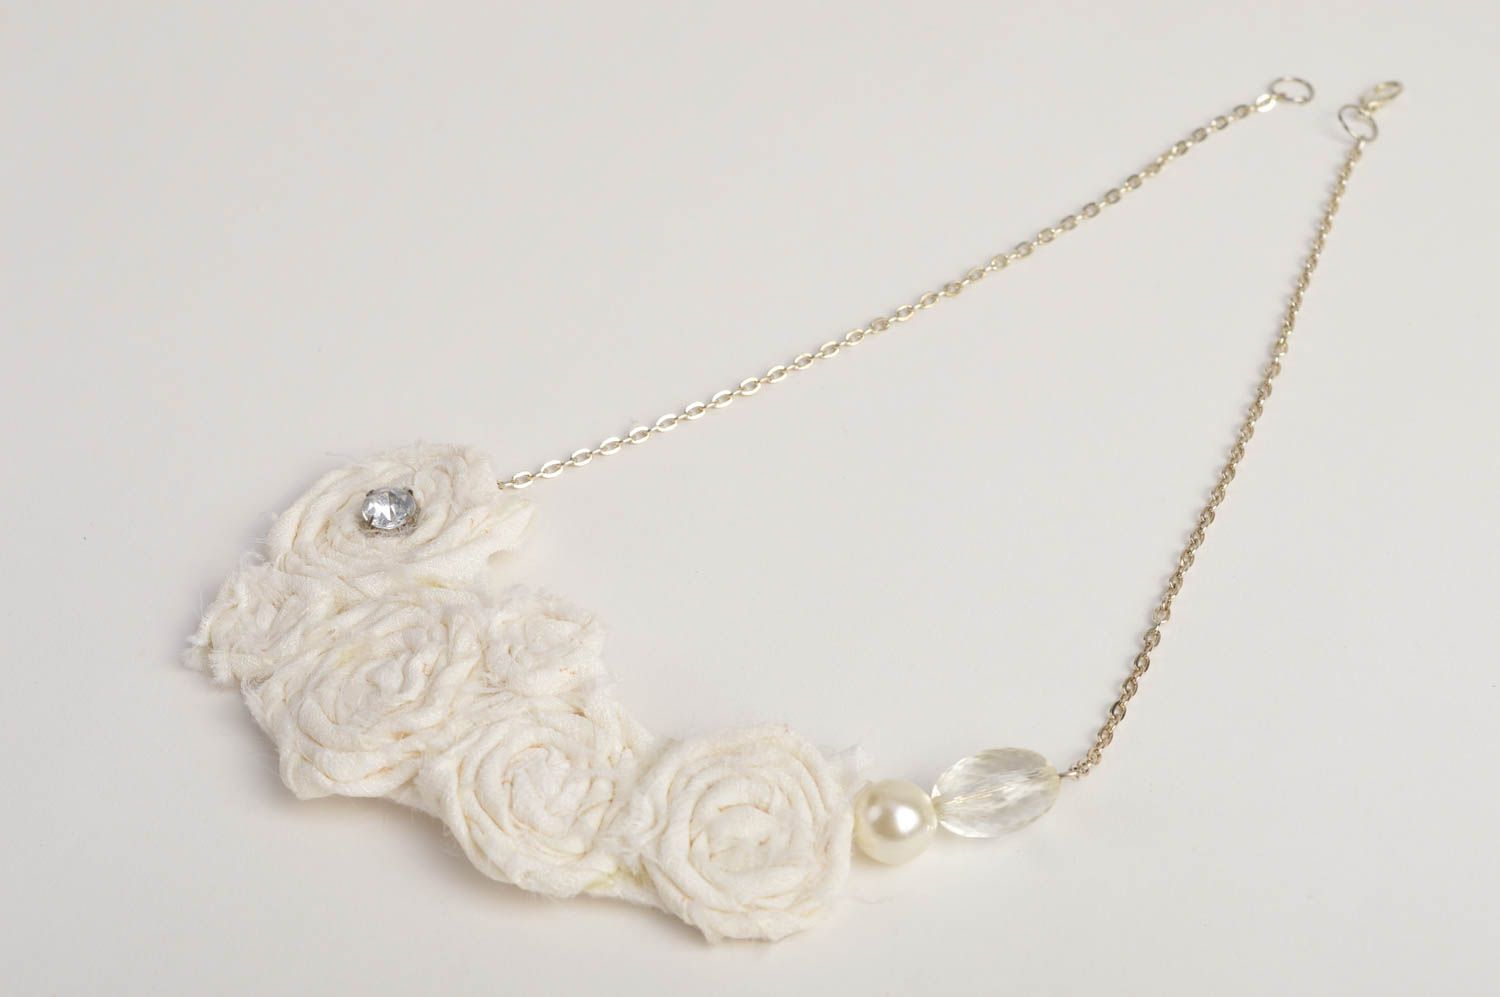 Handmade beaded necklace stylish elegant necklace fabric festive jewelry photo 2